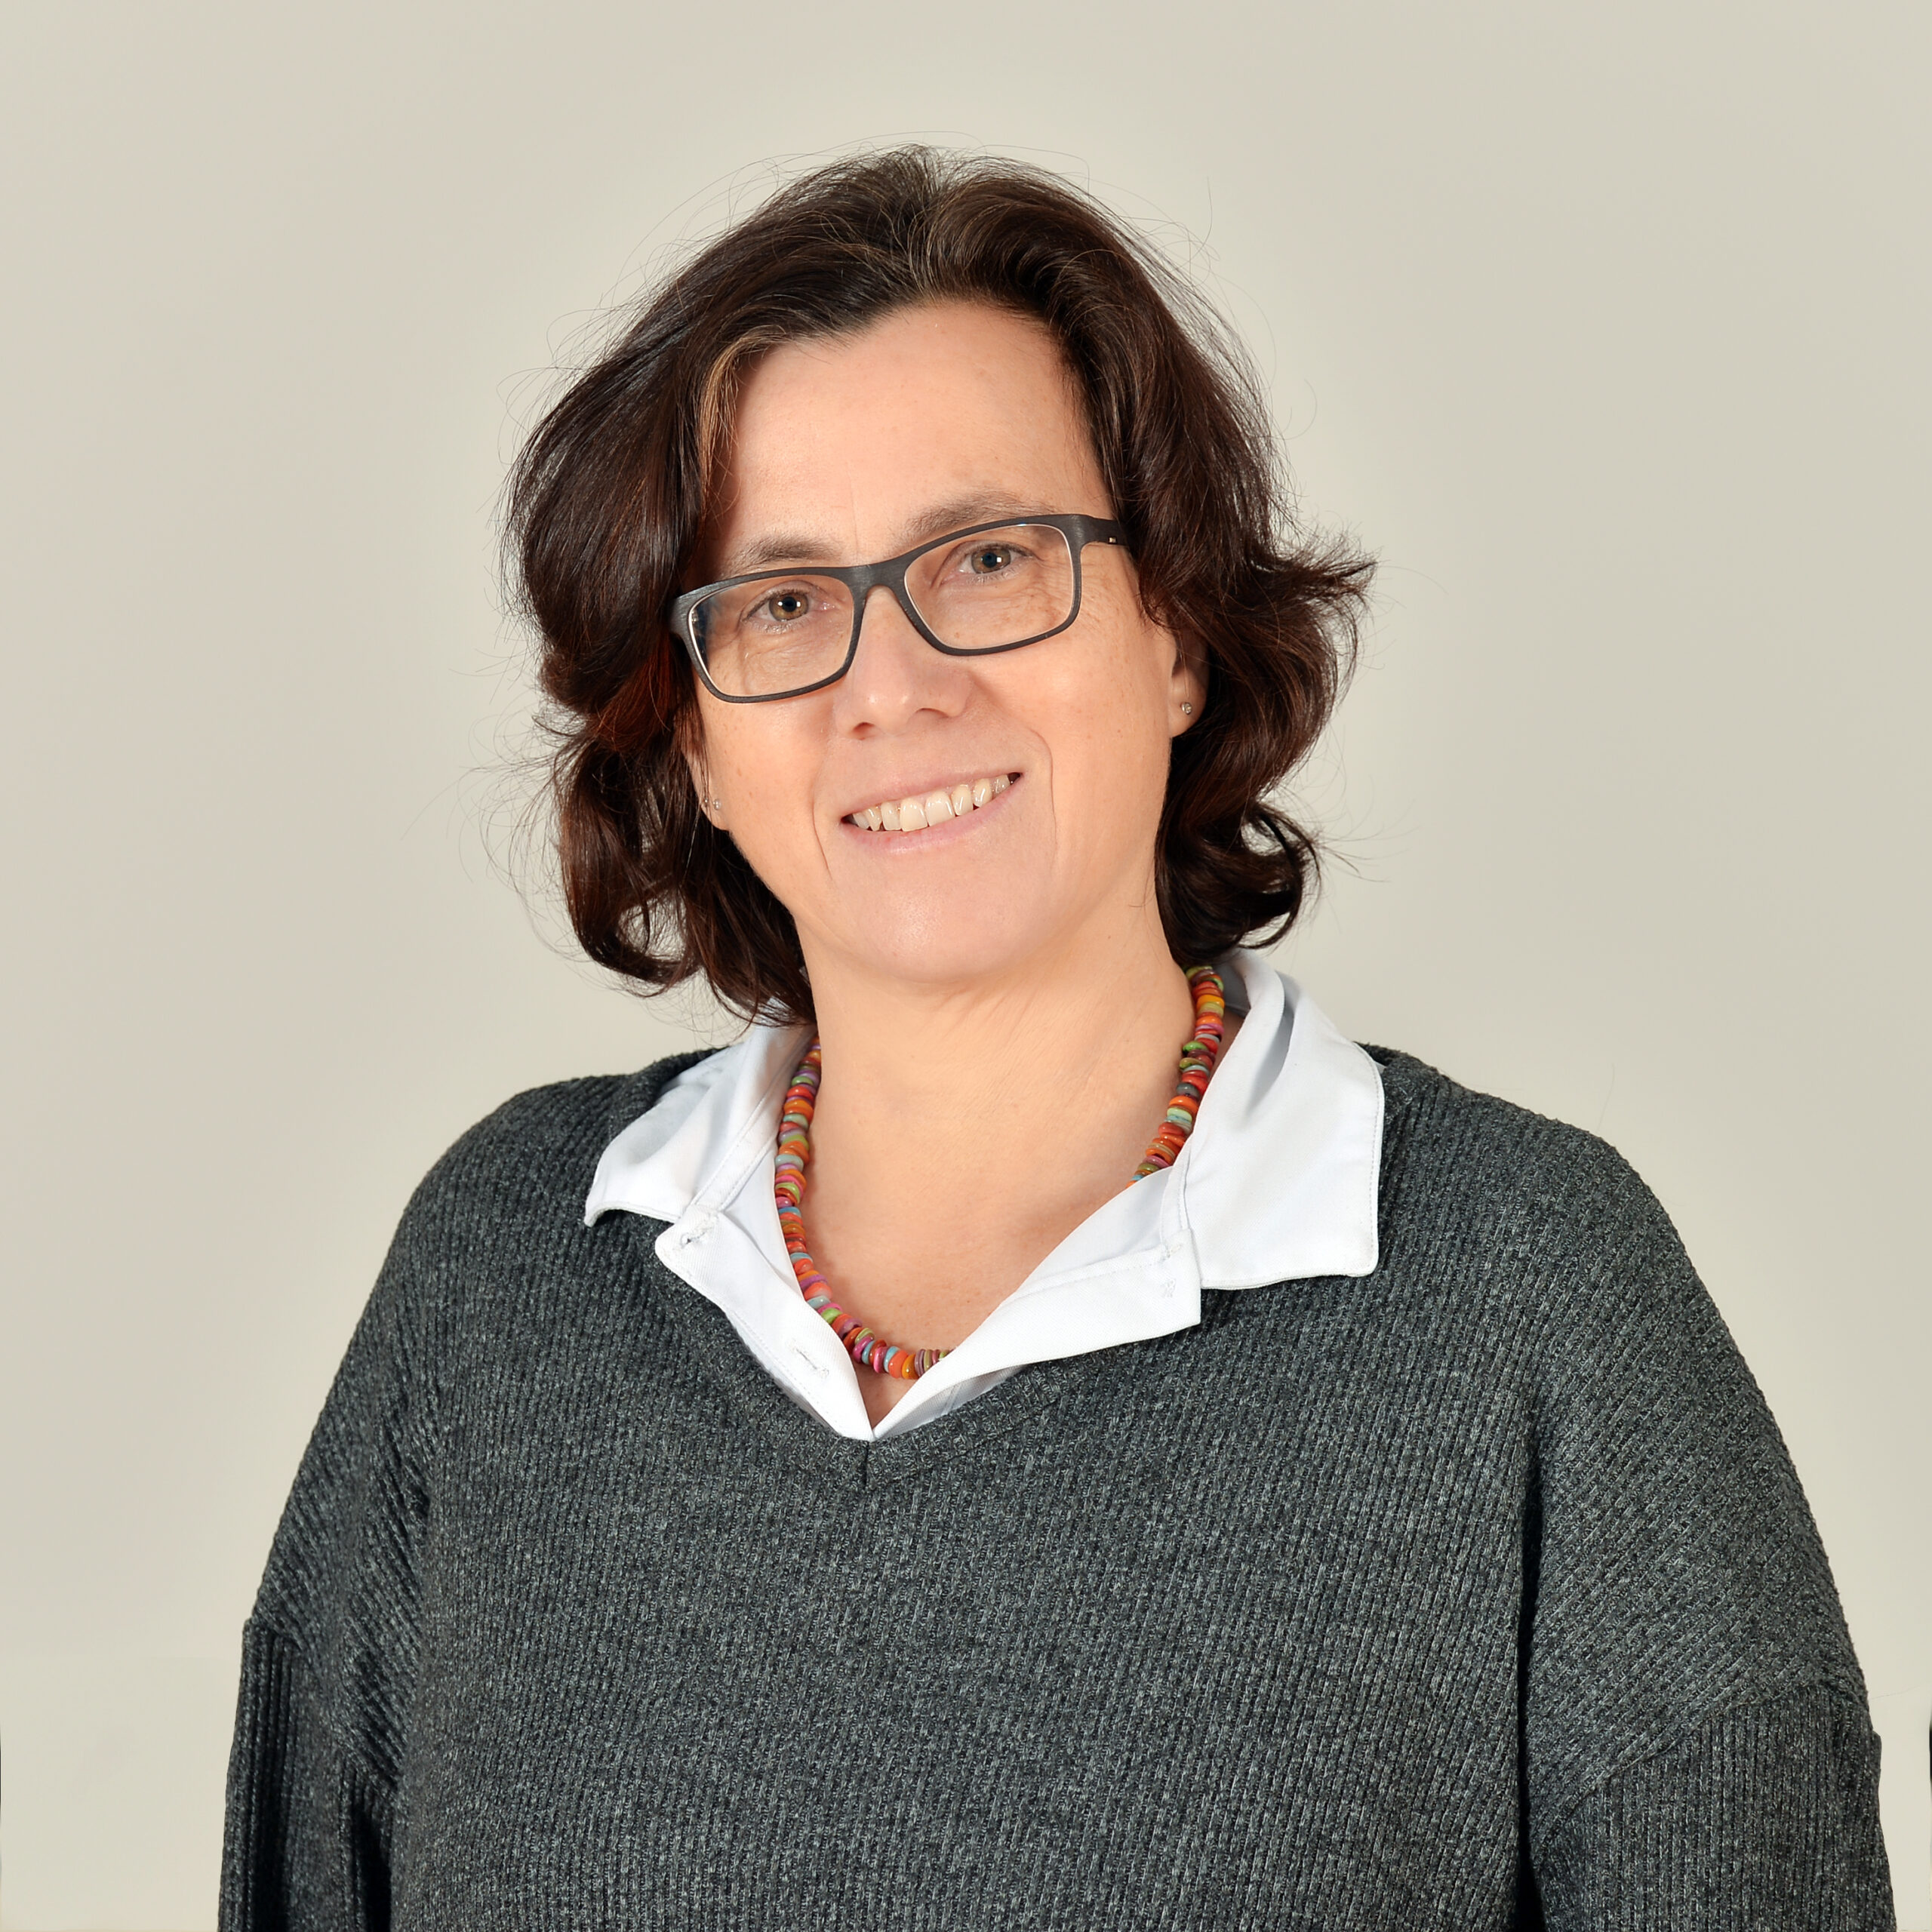 Profilbild von Sabine Carstens in einer weißen Bluse und grauem Pullover.